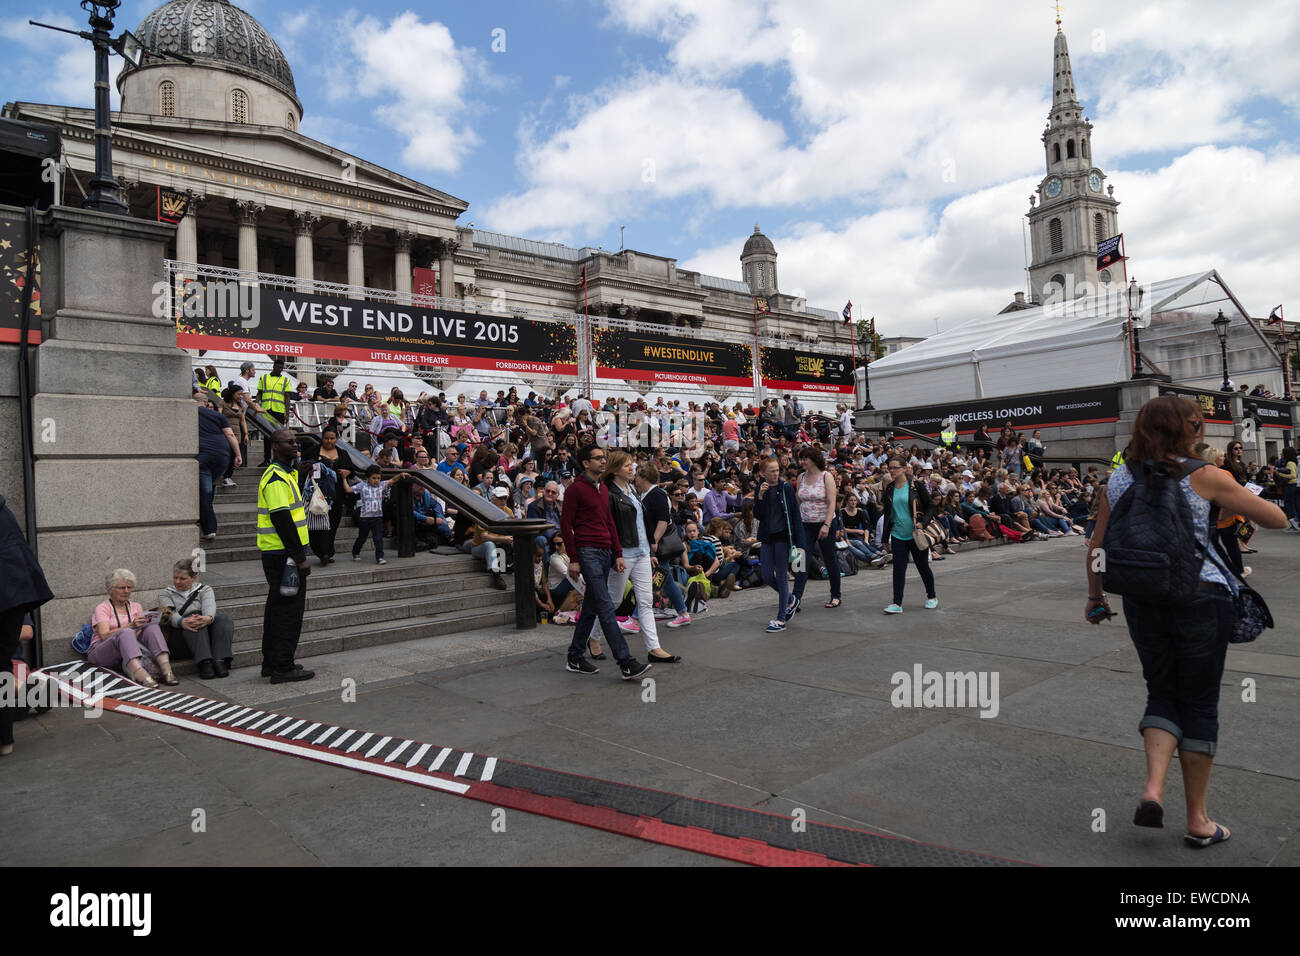 Les spectateurs à l'EXTRÉMITÉ OUEST VIVRE 2015, Trafalgar Square, Londres, UK Banque D'Images